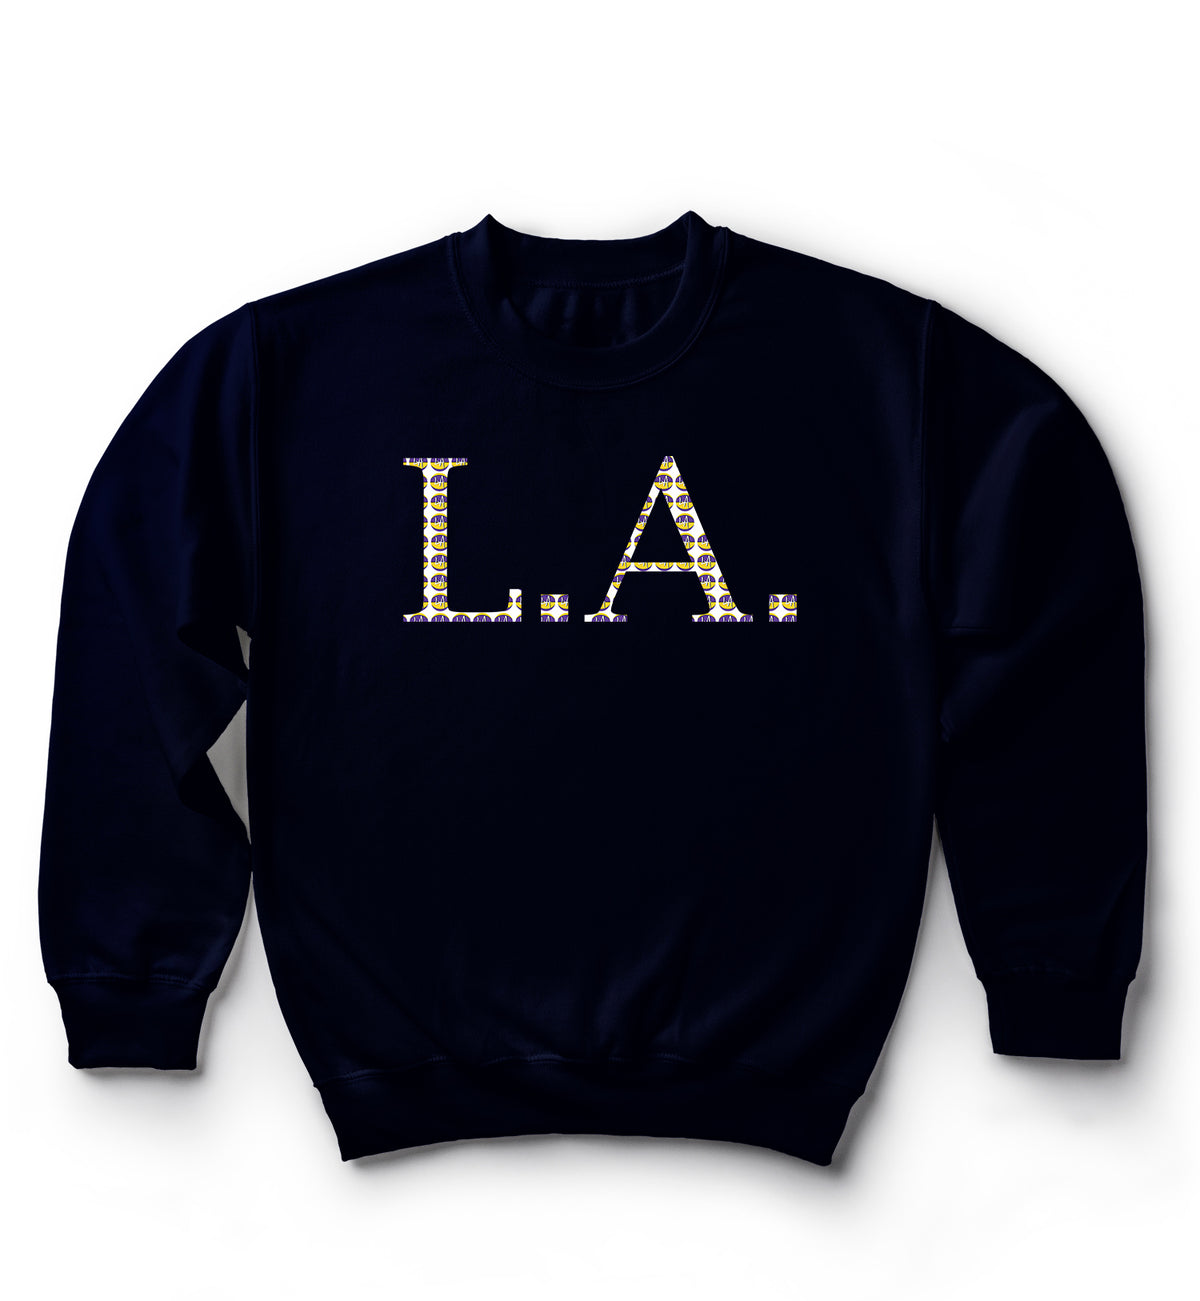 L.A. Sweater